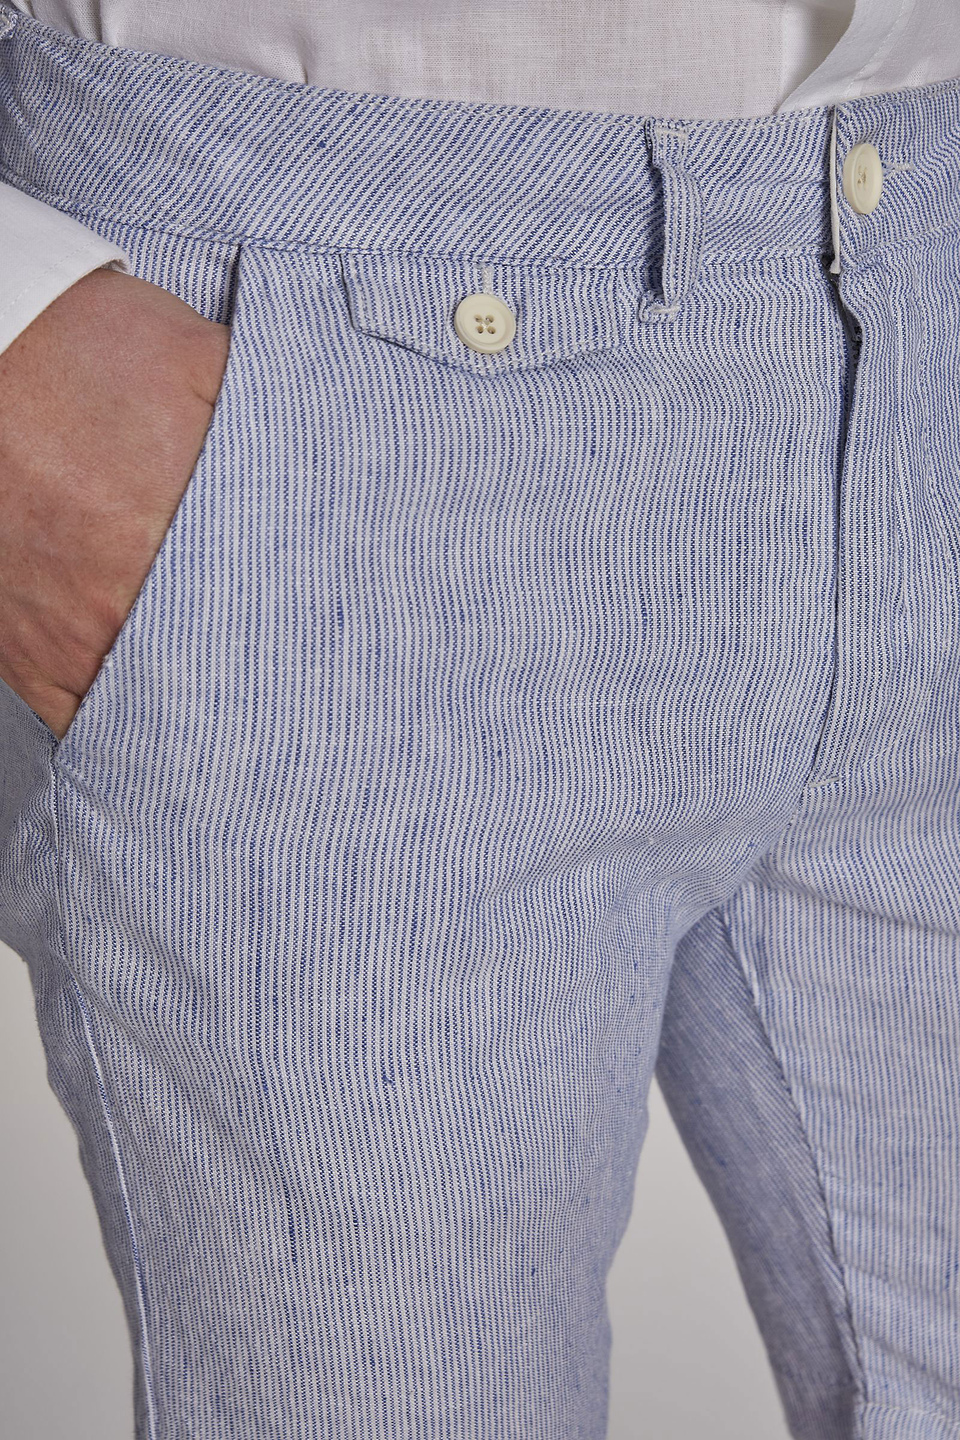 Men's regular-fit linen Bermuda shorts - La Martina - Official Online Shop